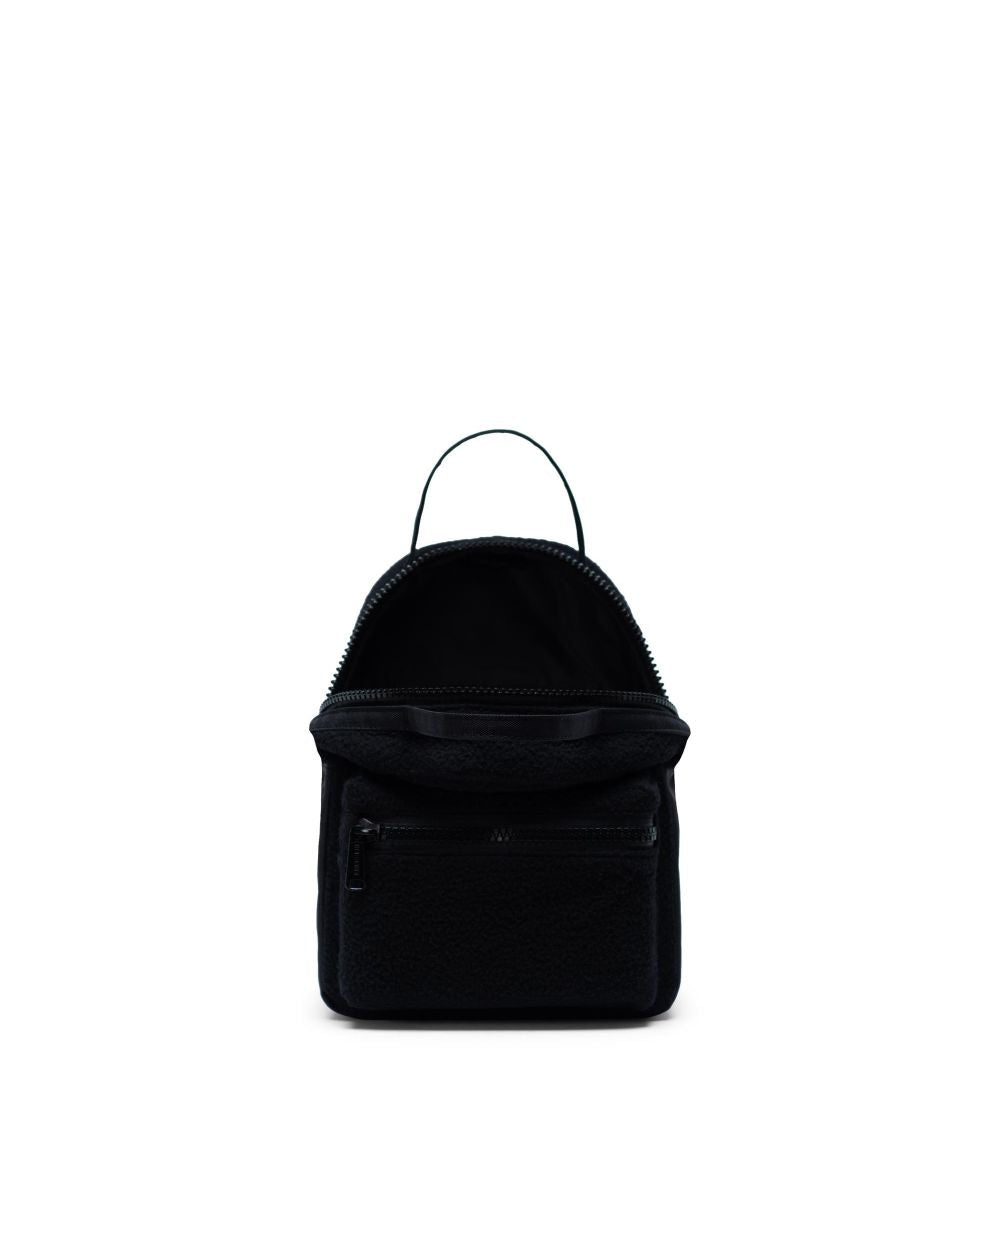 Herschel Supply Co. Nova Sherpa Black Mini Backpack